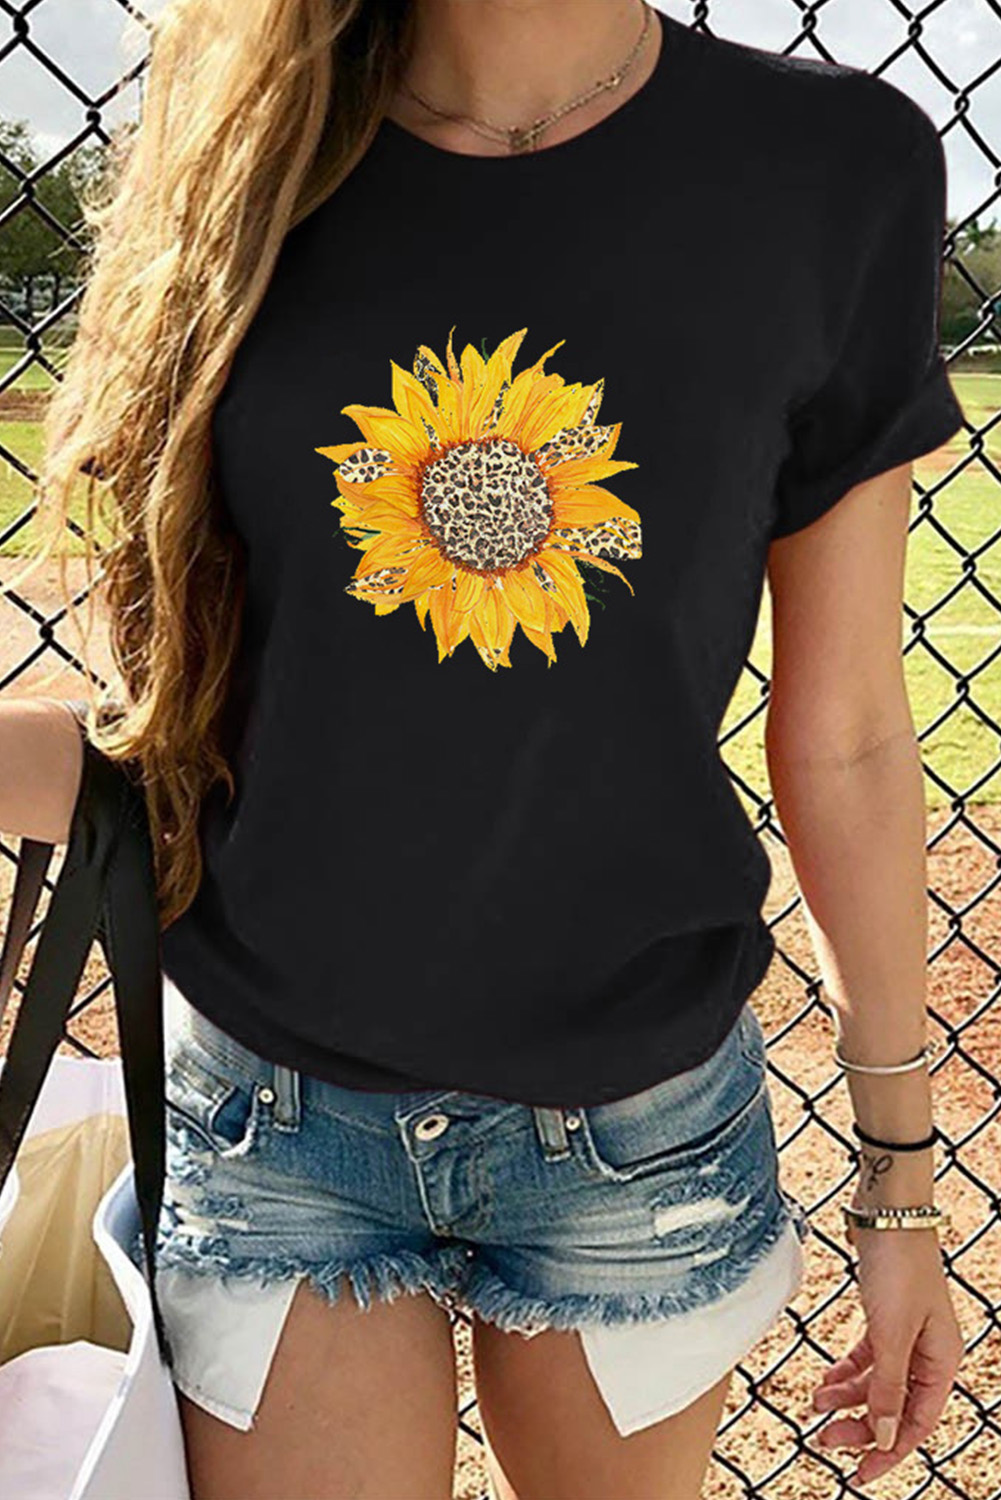 US$5.5 Black Sunflower Print Cotton T-shirt Wholesale Online